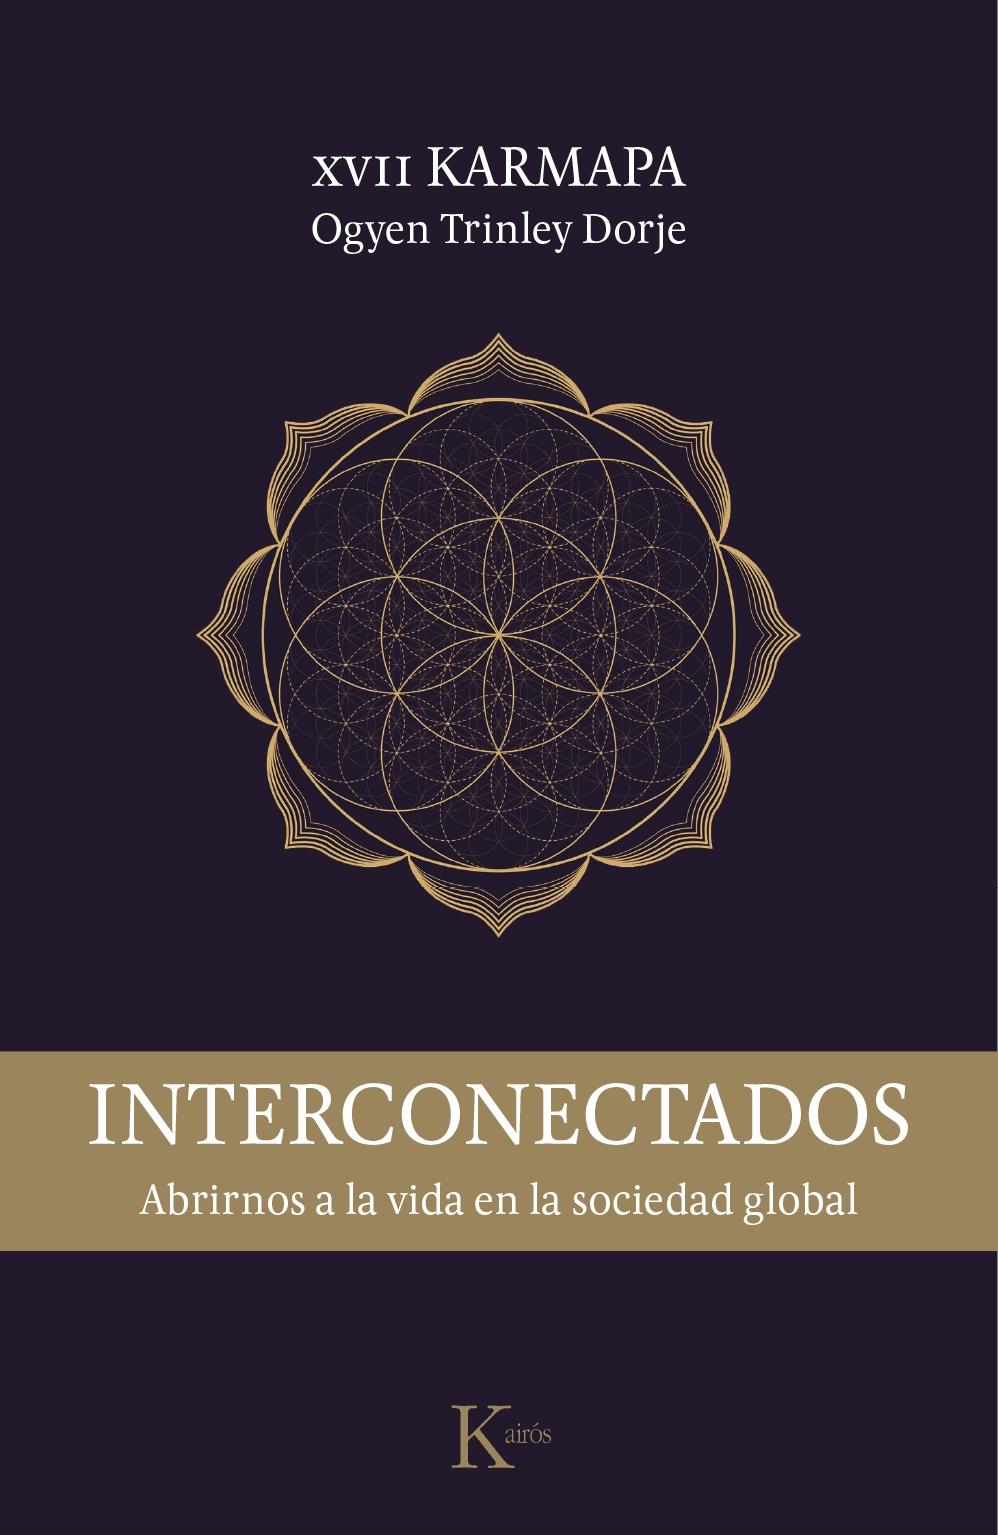 INTERCONECTADOS "ABRIRNOS A LA VIDA EN LA SOCIEDAD GLOBAL". 